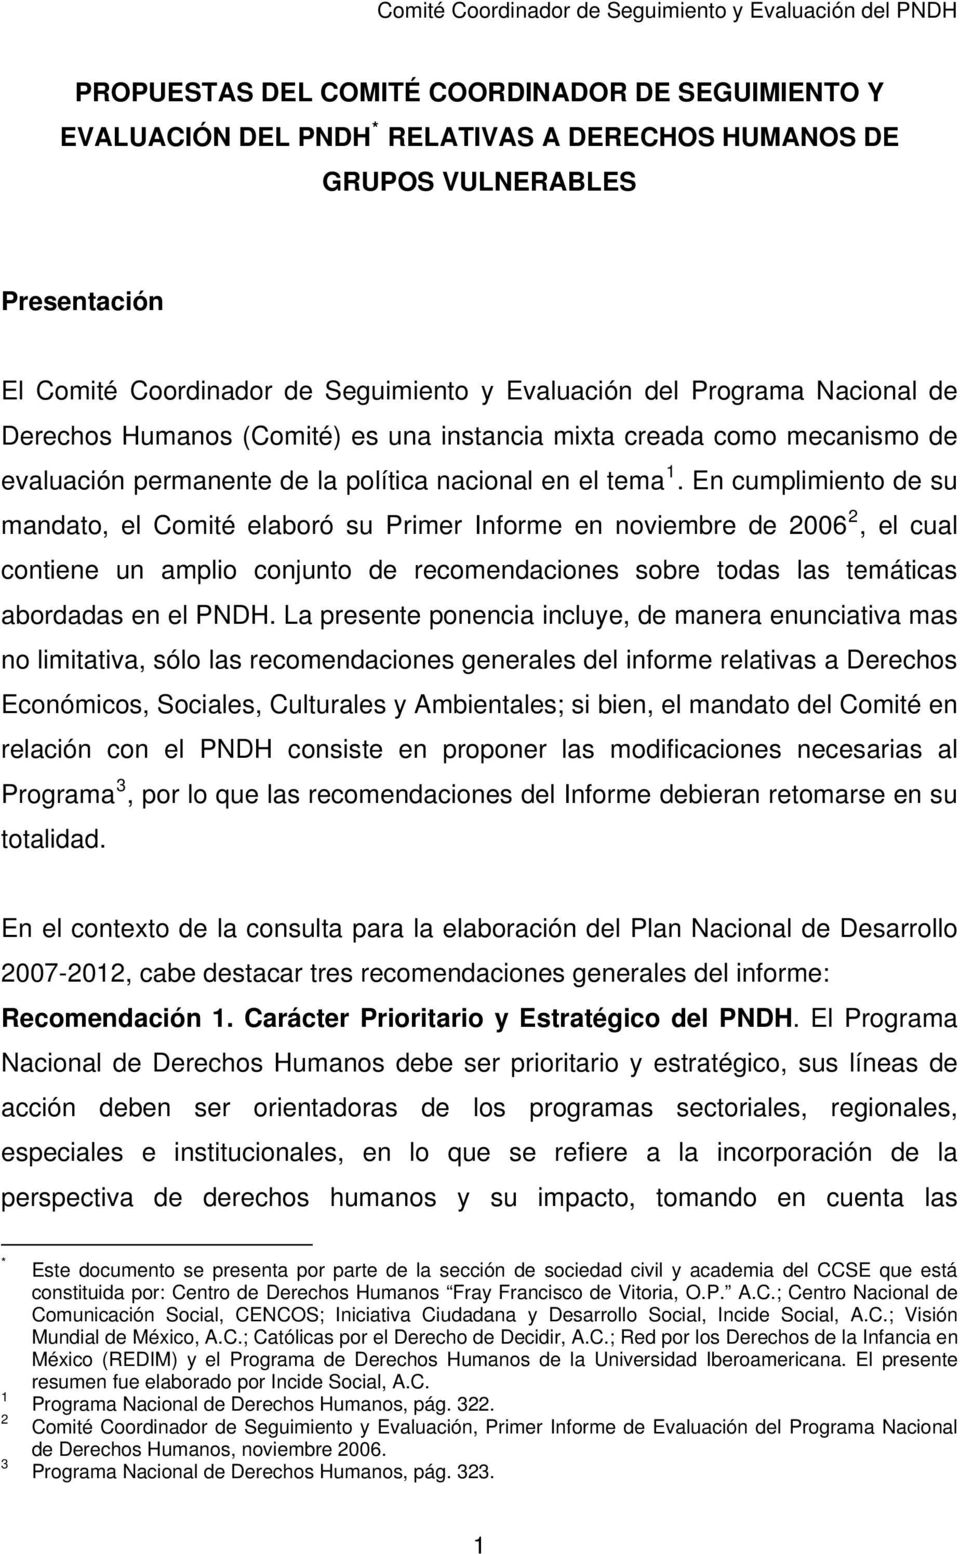 En cumplimiento de su mandato, el Comité elaboró su Primer Informe en noviembre de 2006 2, el cual contiene un amplio conjunto de recomendaciones sobre todas las temáticas abordadas en el PNDH.